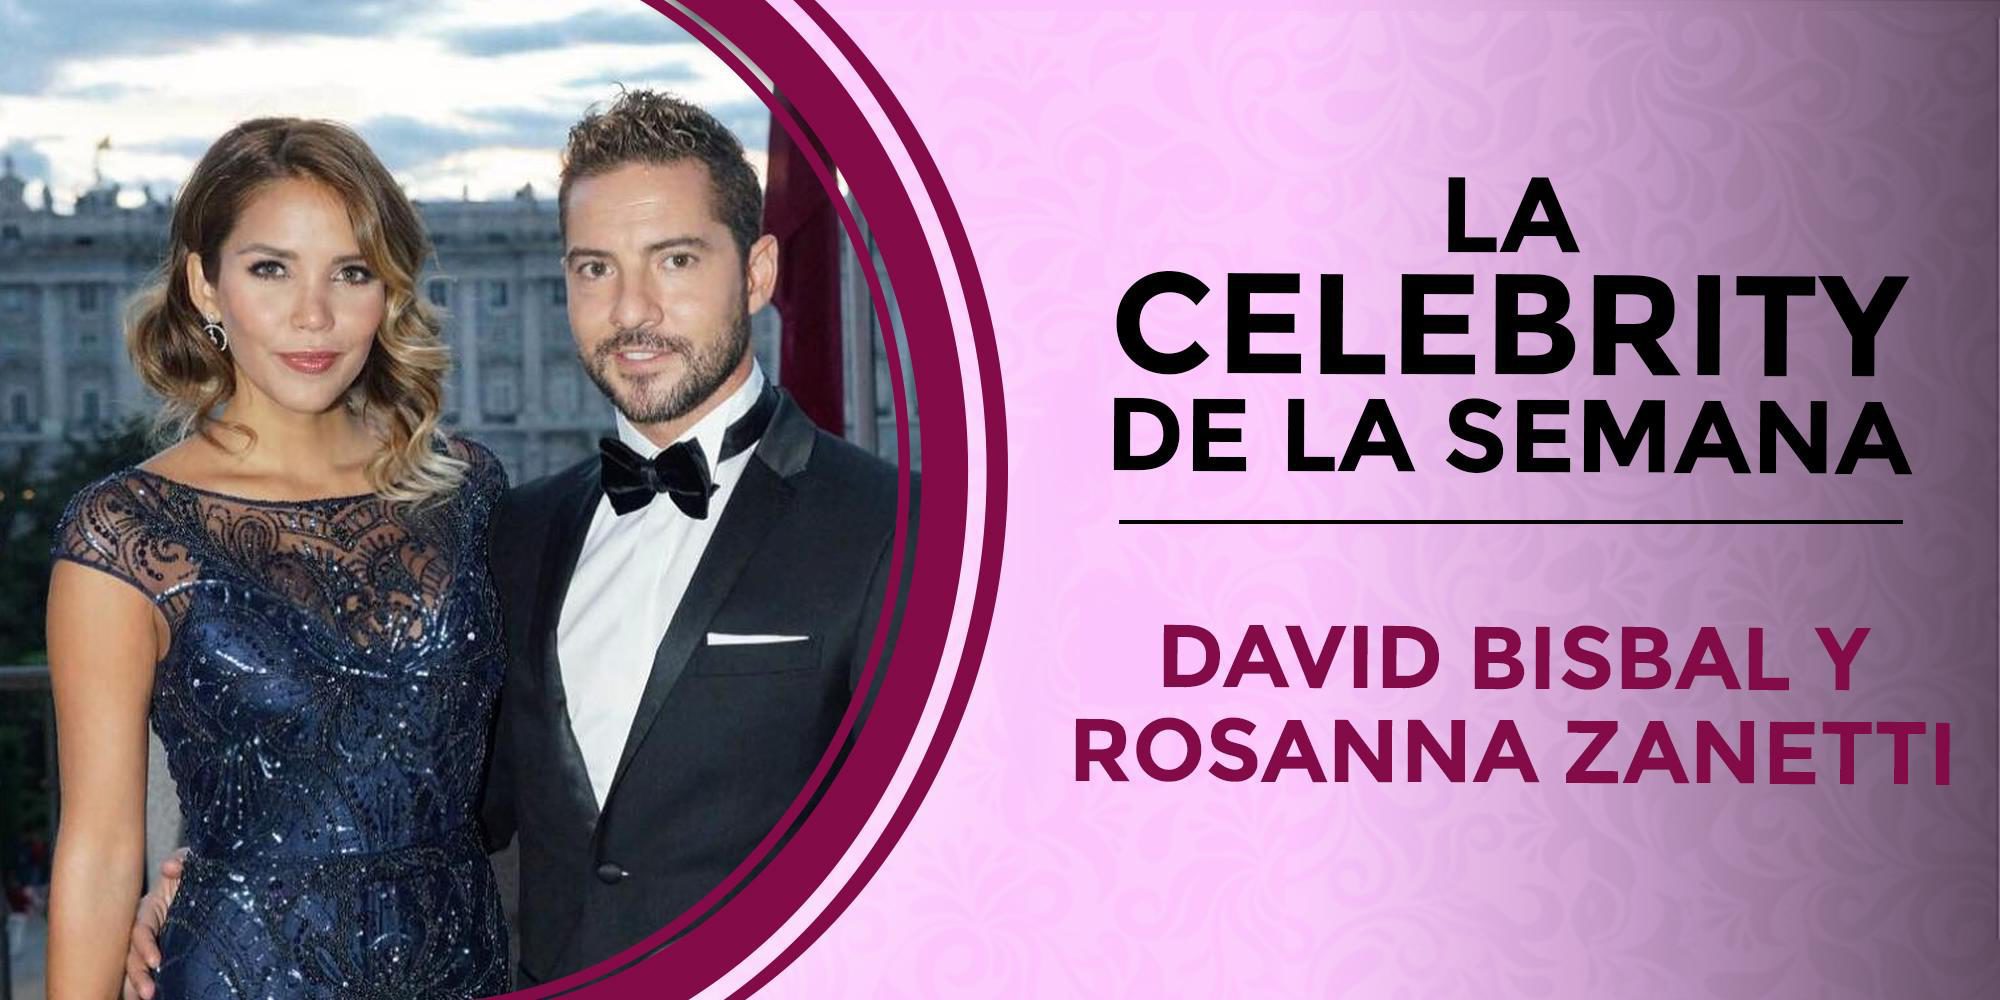 David Bisbal, la celebrity de la semana por abandonar la soltería gracias a Rosanna Zanetti